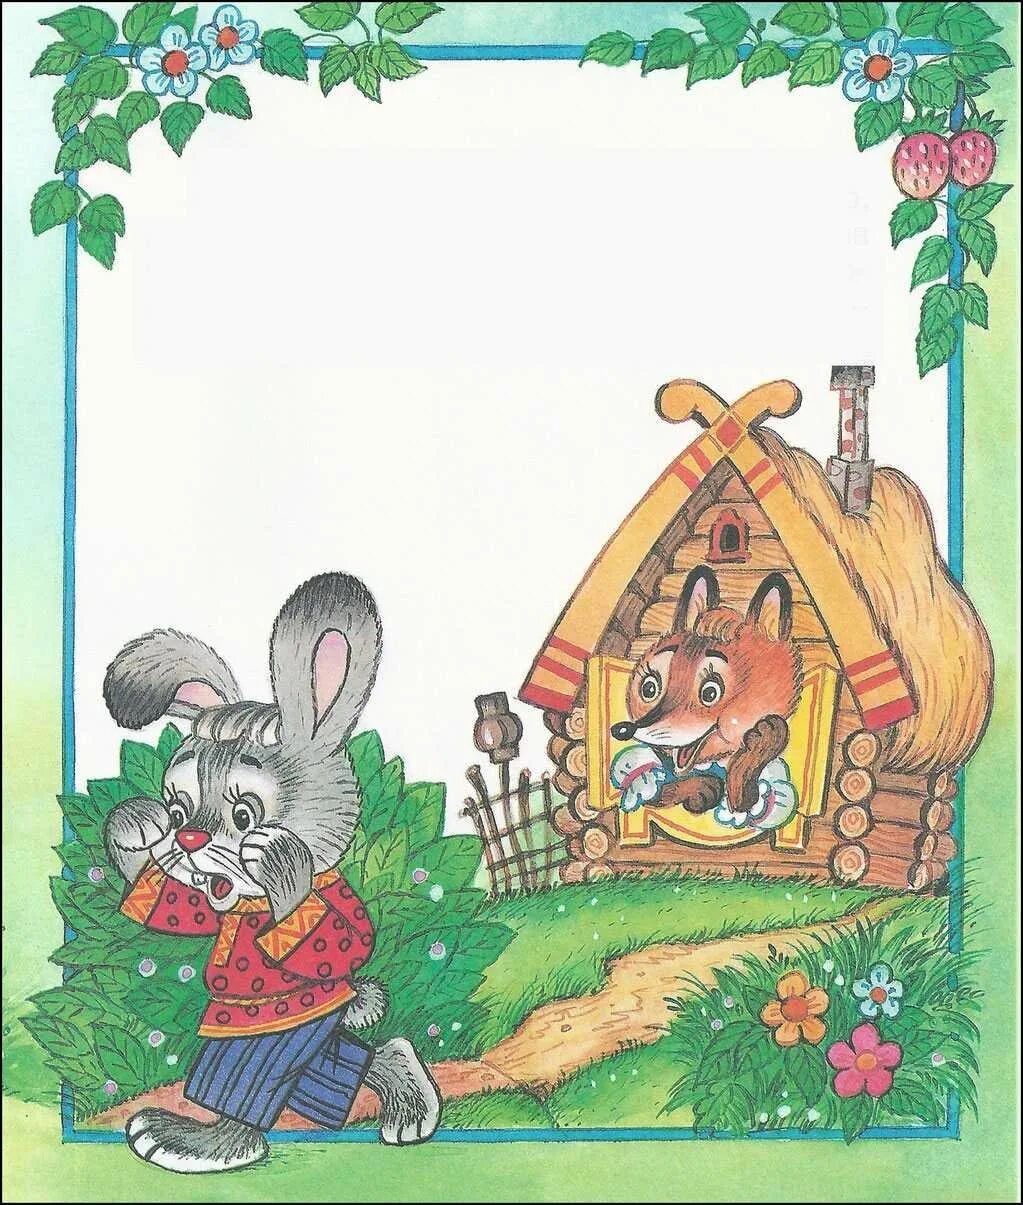 Заюшкина избушка заяц. Сказка Заинькина избука. Заюшкина избушка лиса и заяц. Сказка про зайца и лису избушка Лубяная. Зайкина избушка сказка.